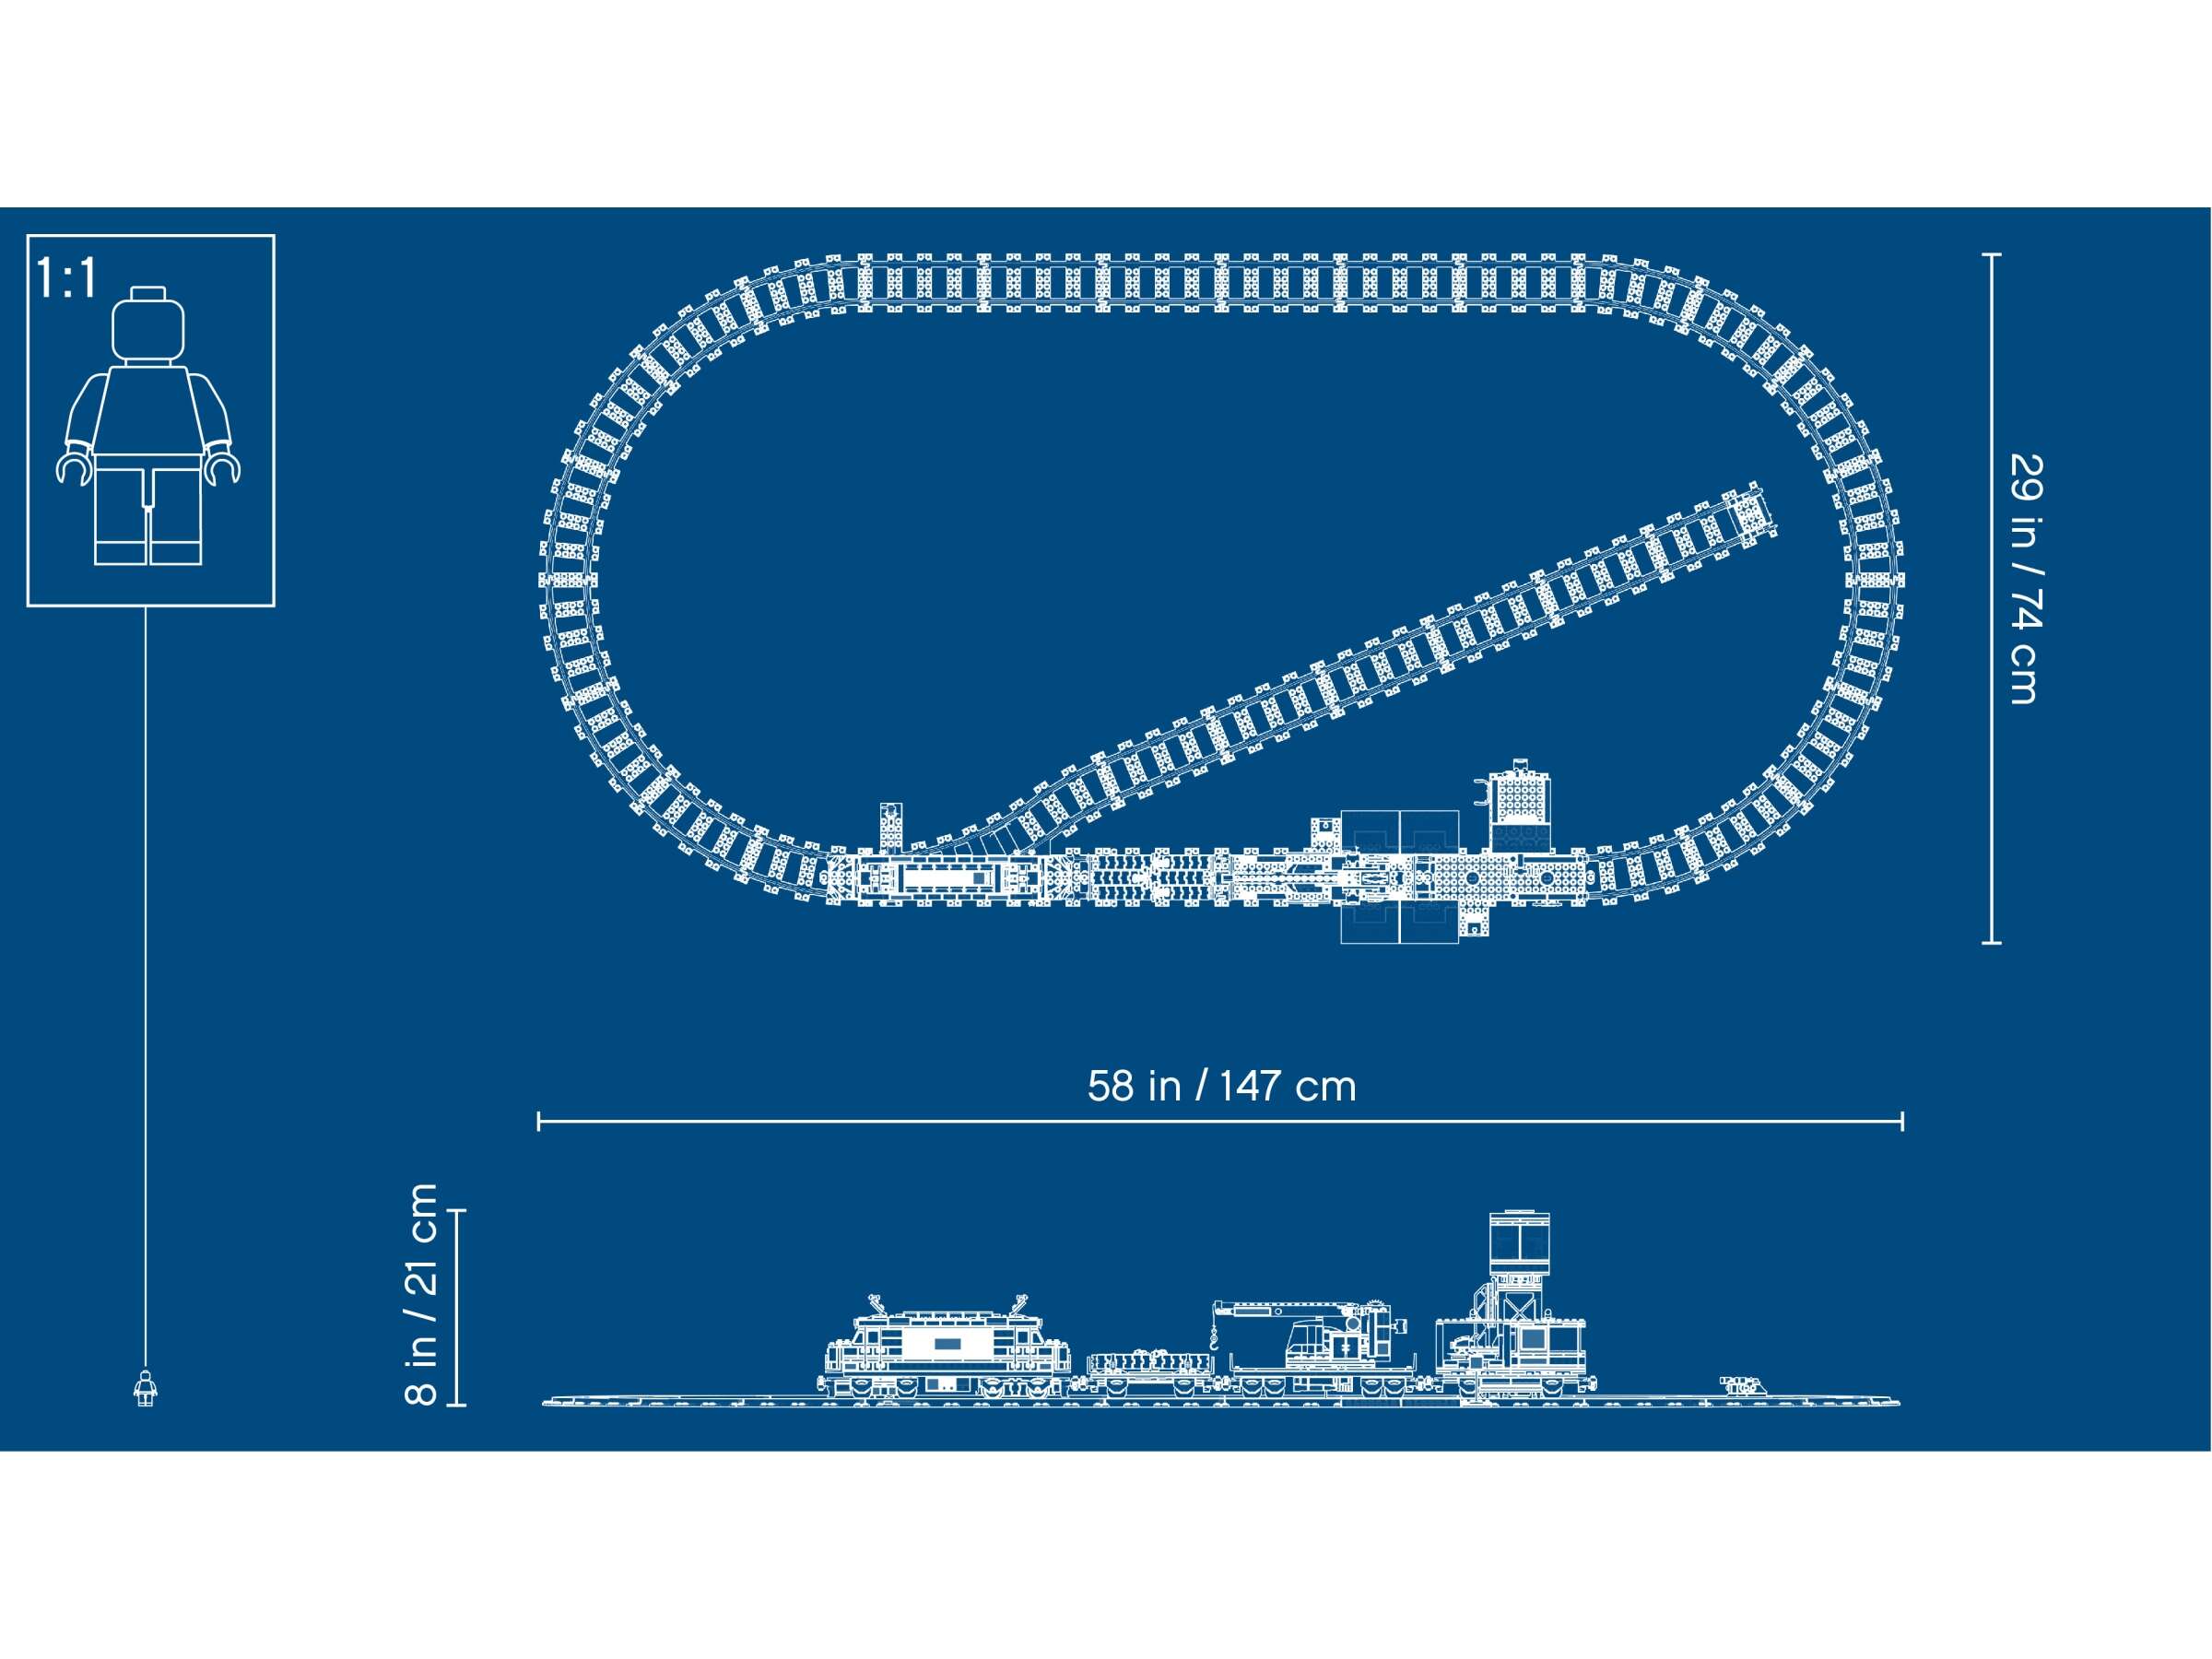 LEGO 60198 City Güterzug, mit batteriebetriebenem Motor, Bluetooth-Fernbedienung